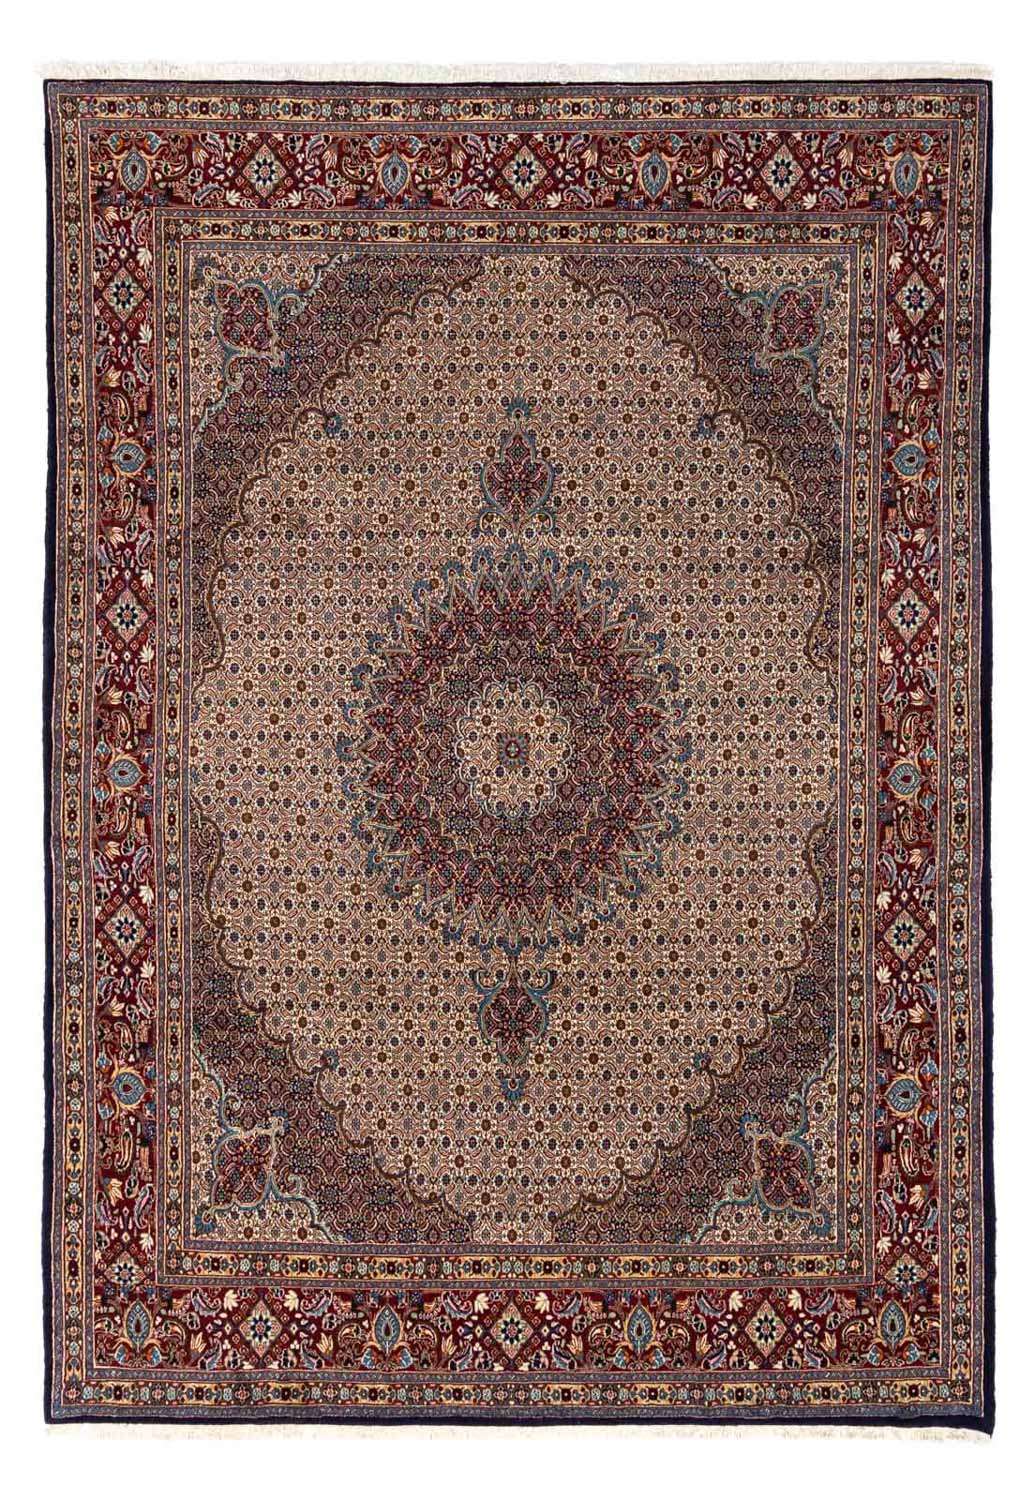 Tapis persan - Classique - 347 x 243 cm - bleu clair